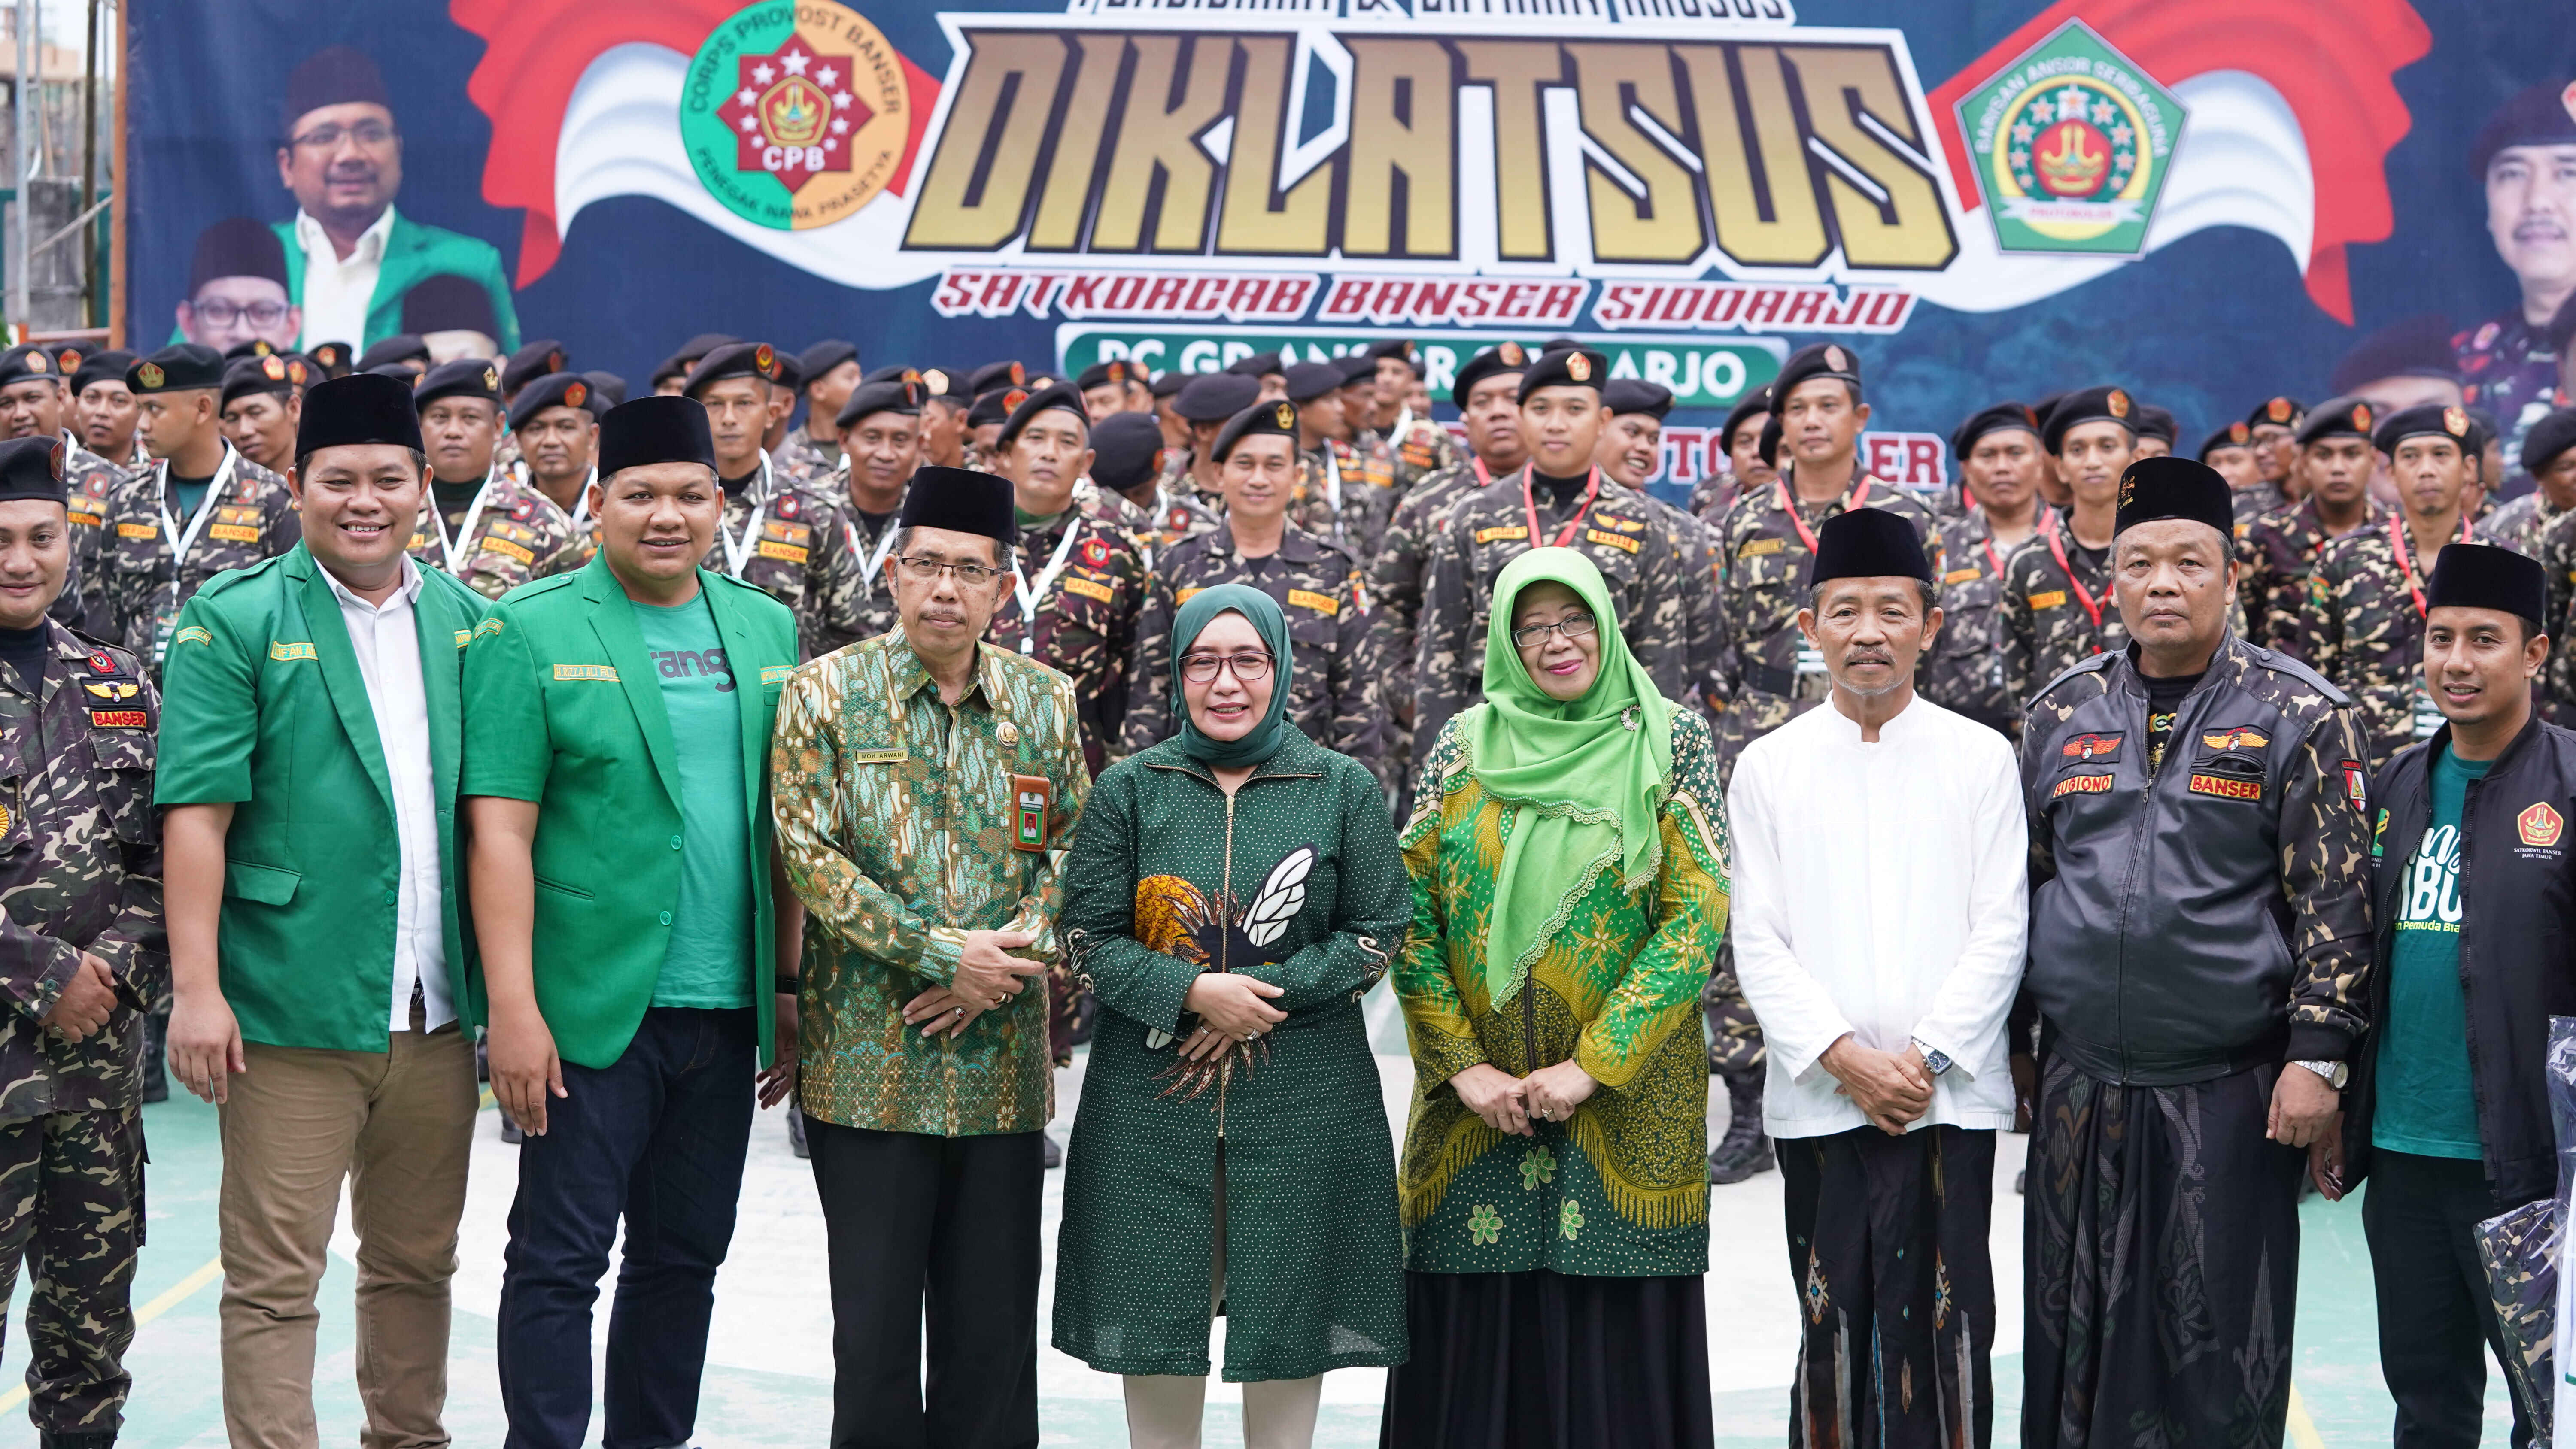 Wakil Ketua DPRD Jatim Puji Kontribusi Banser Di Jawa Timur